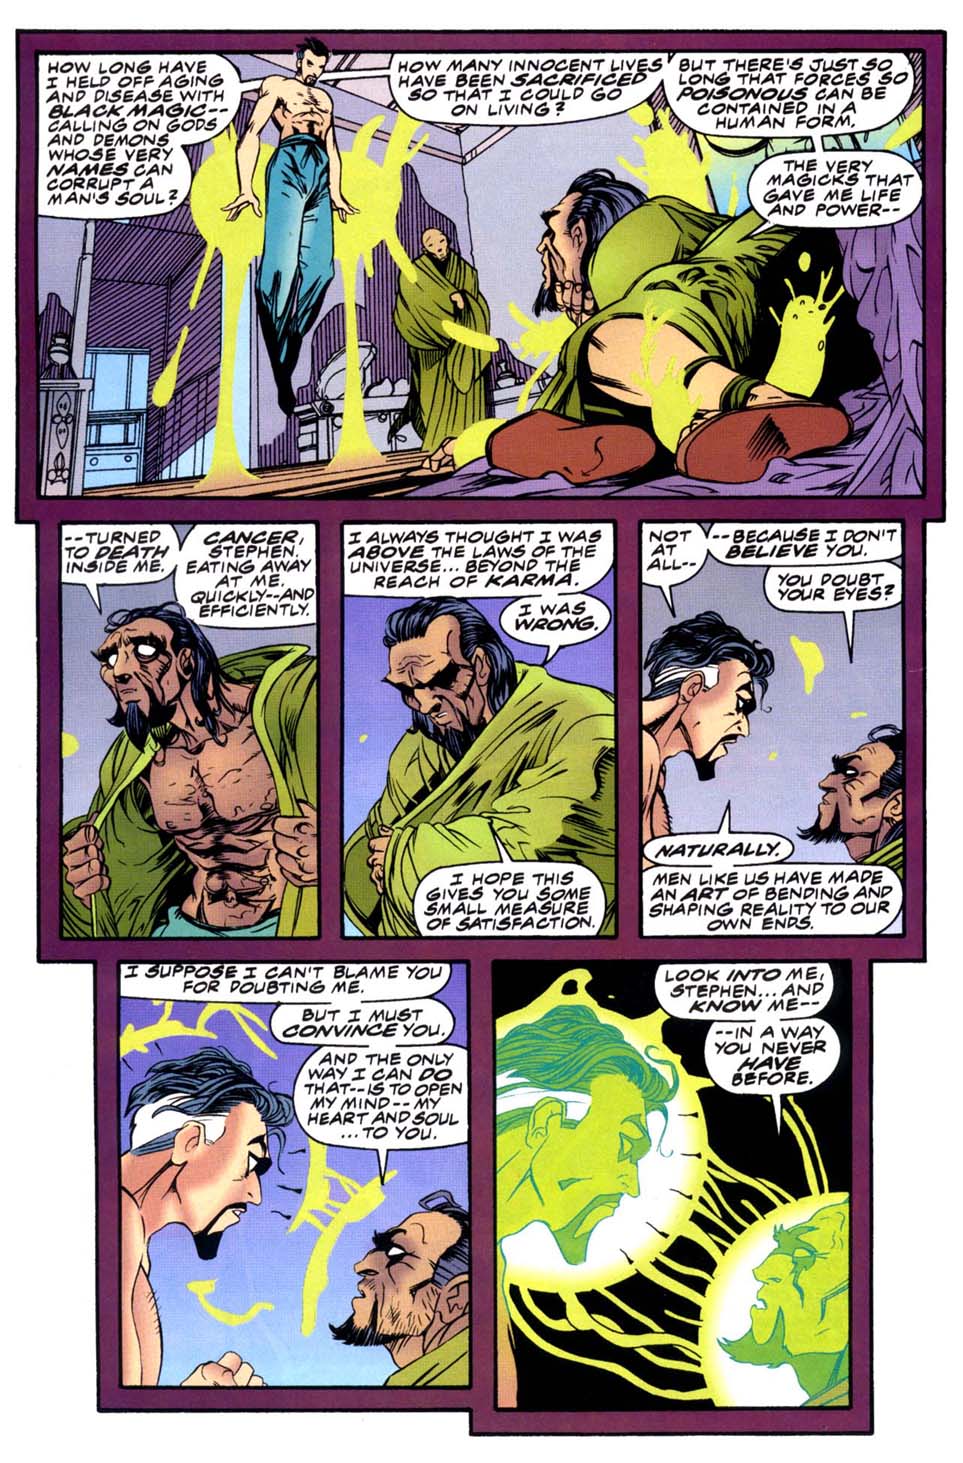 Doctor Strange: Sorcerer Supreme issue 85 - Page 11